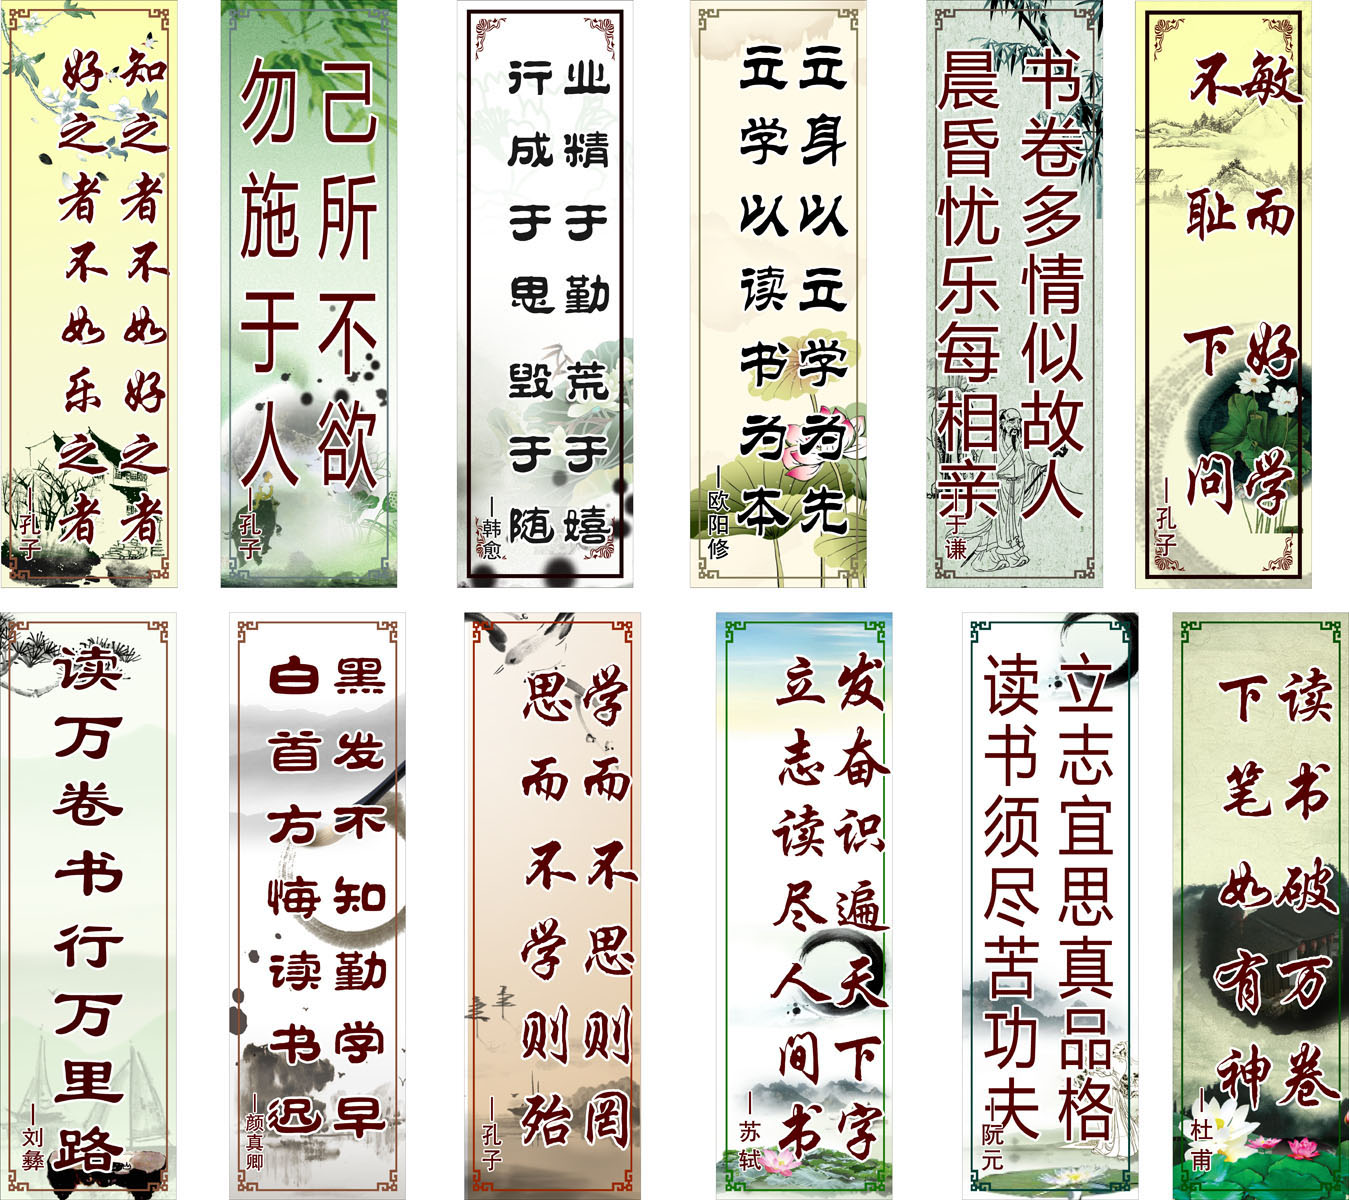 720海报印制展板写真喷绘58中国风读书名言名句校园图书馆标语